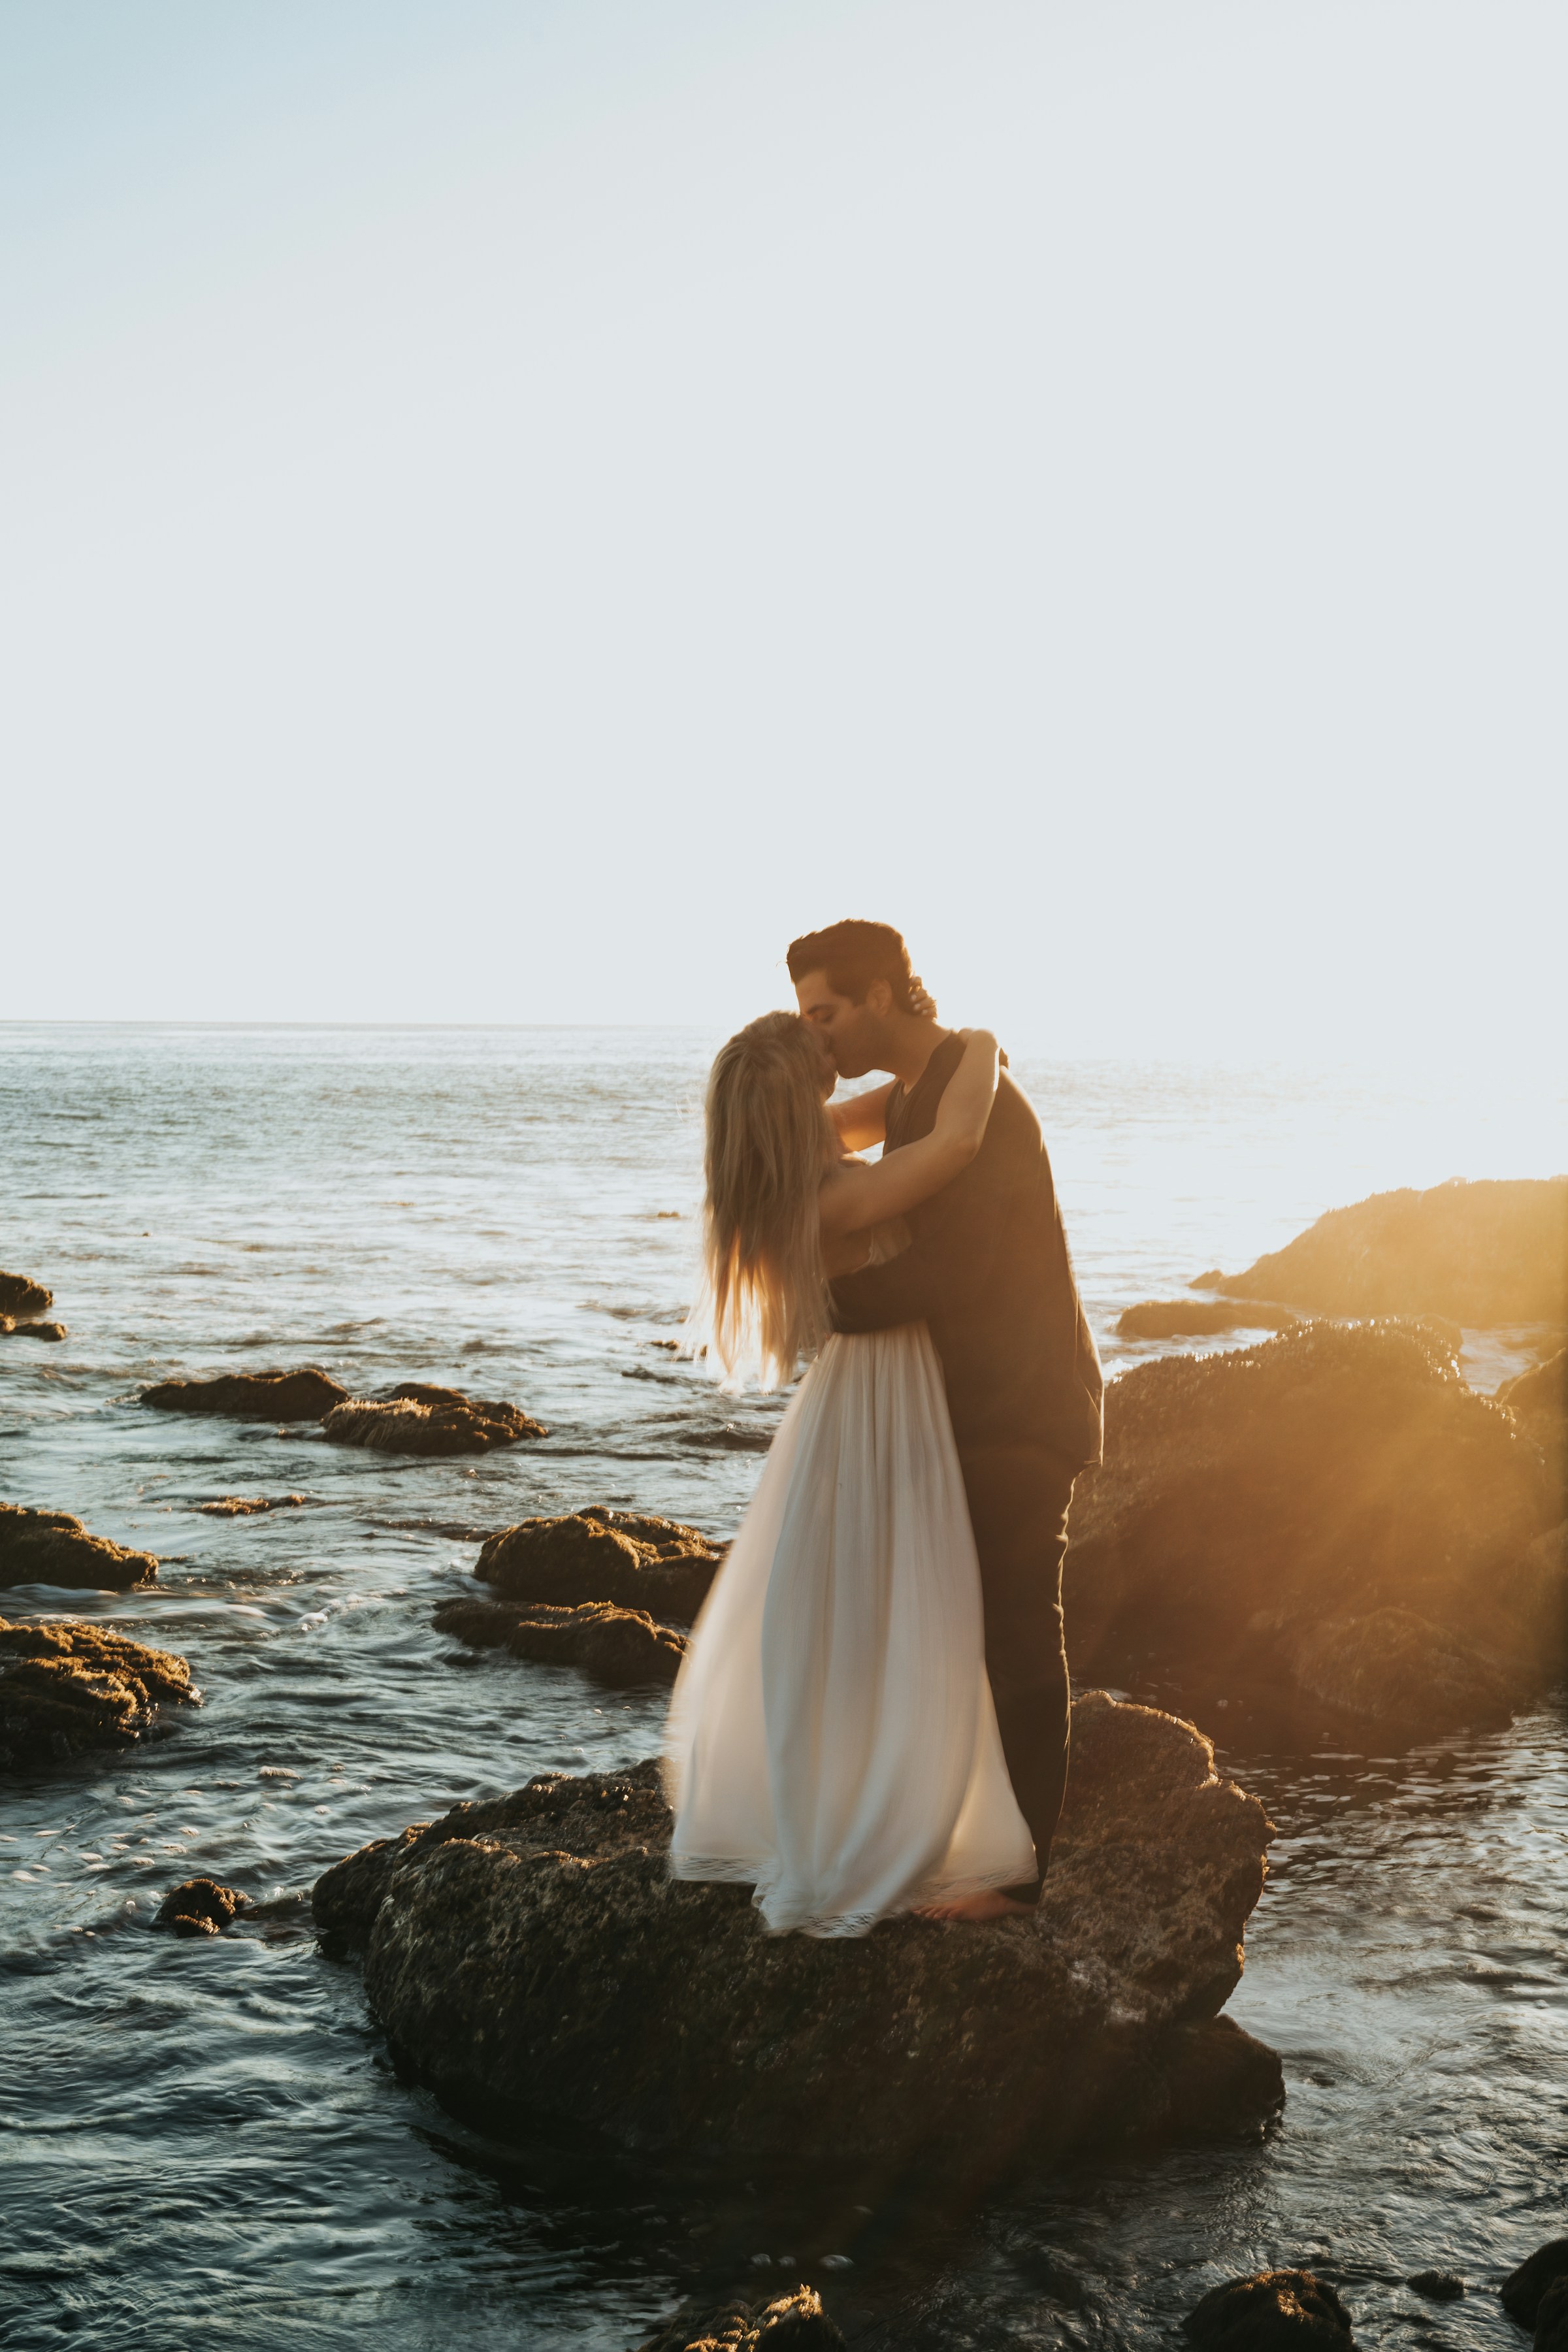 Una pareja besándose encima de una roca en una playa | Fuente: Unsplash